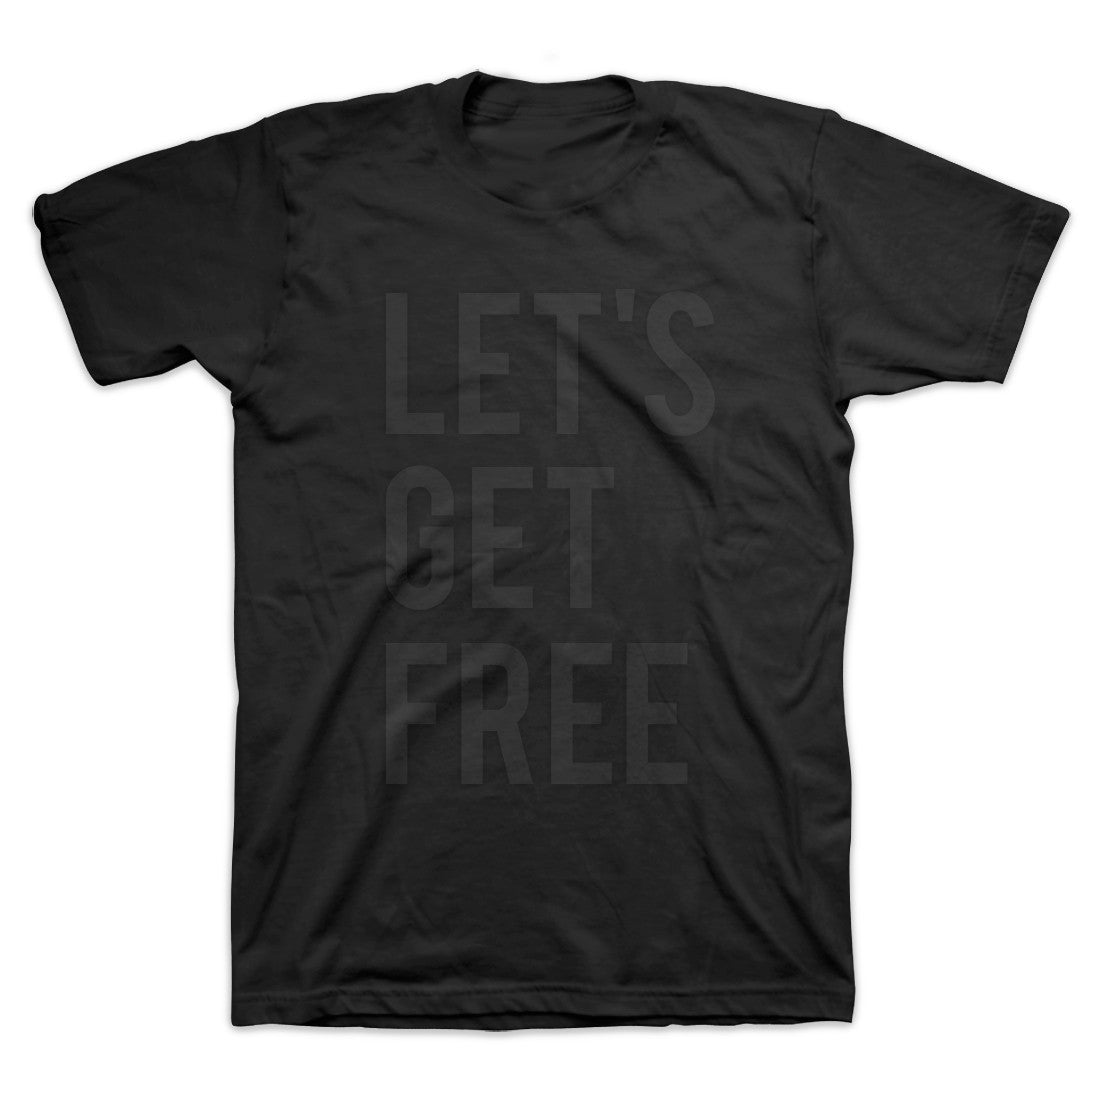 dead prez - Let's Get Free Men's Shirt, Black - The Giant Peach